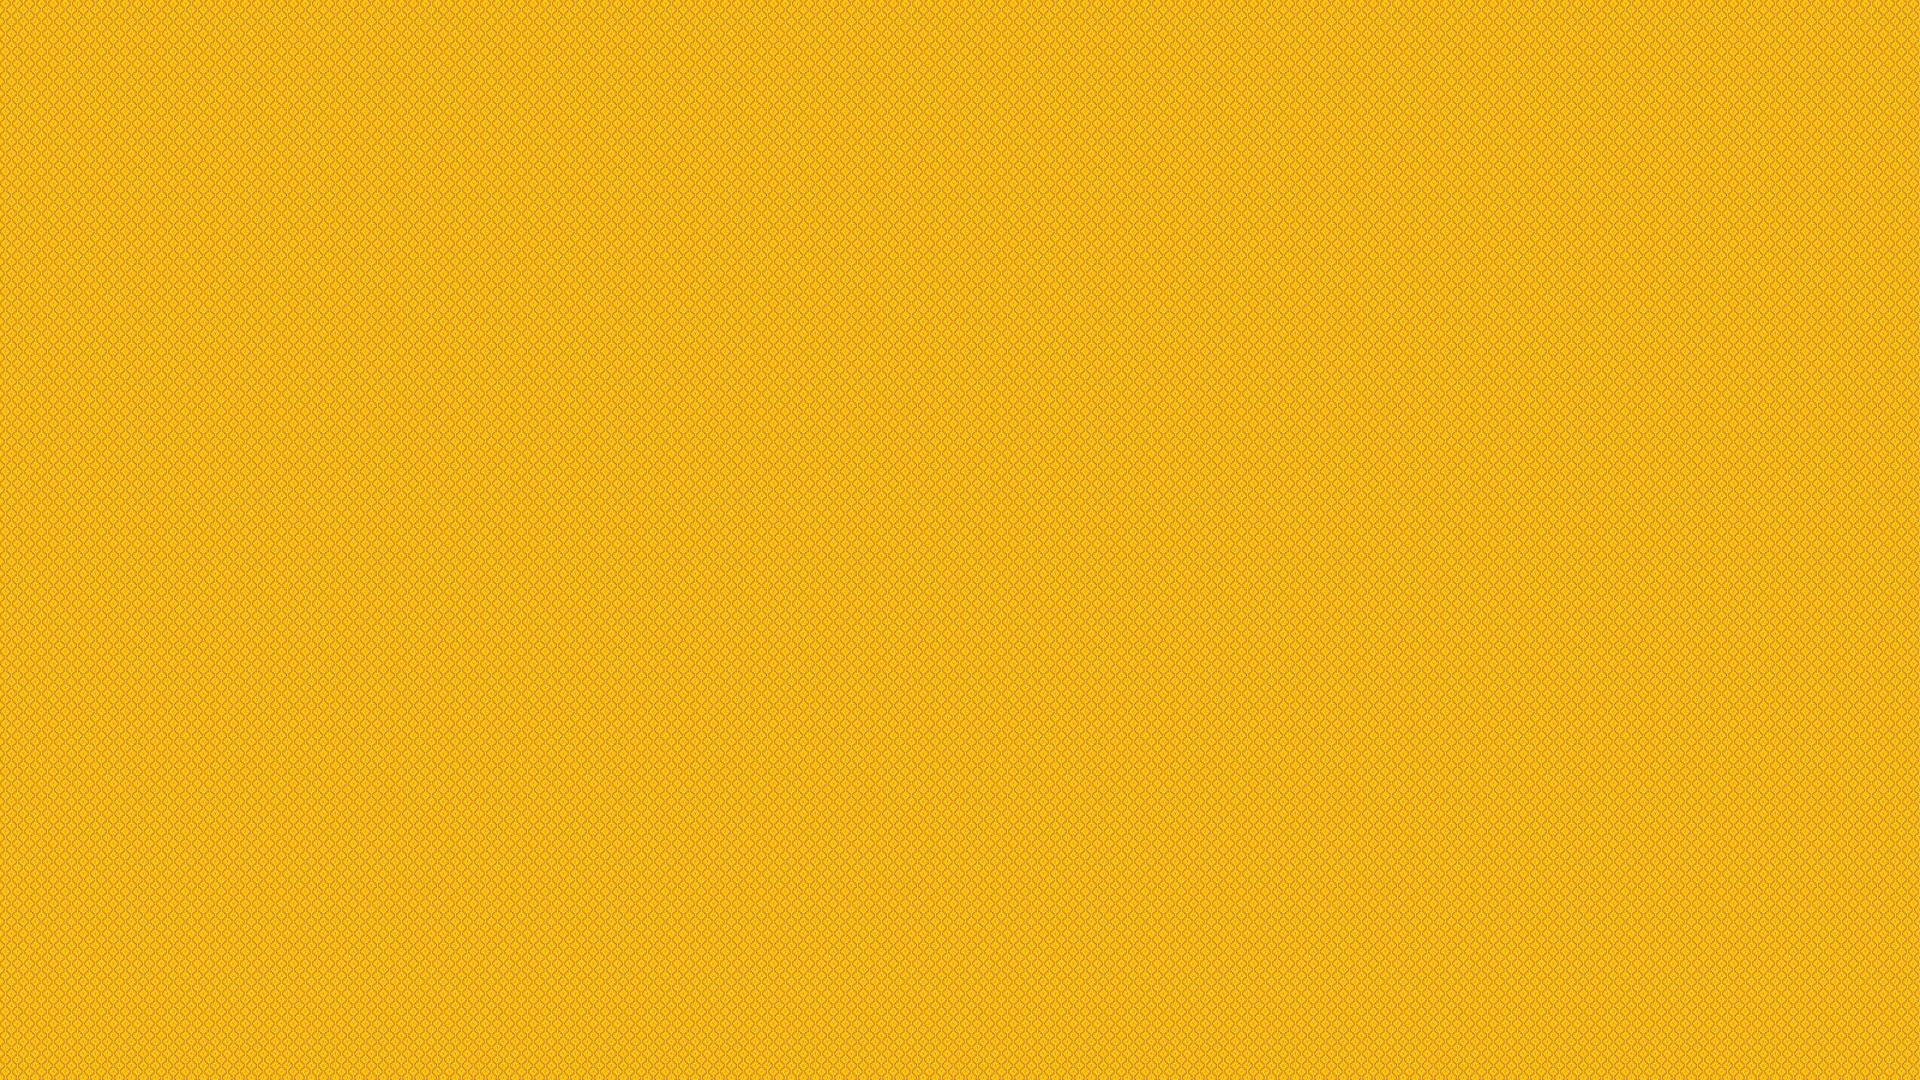 Golden Plain Yellow Desktop Wallpaper